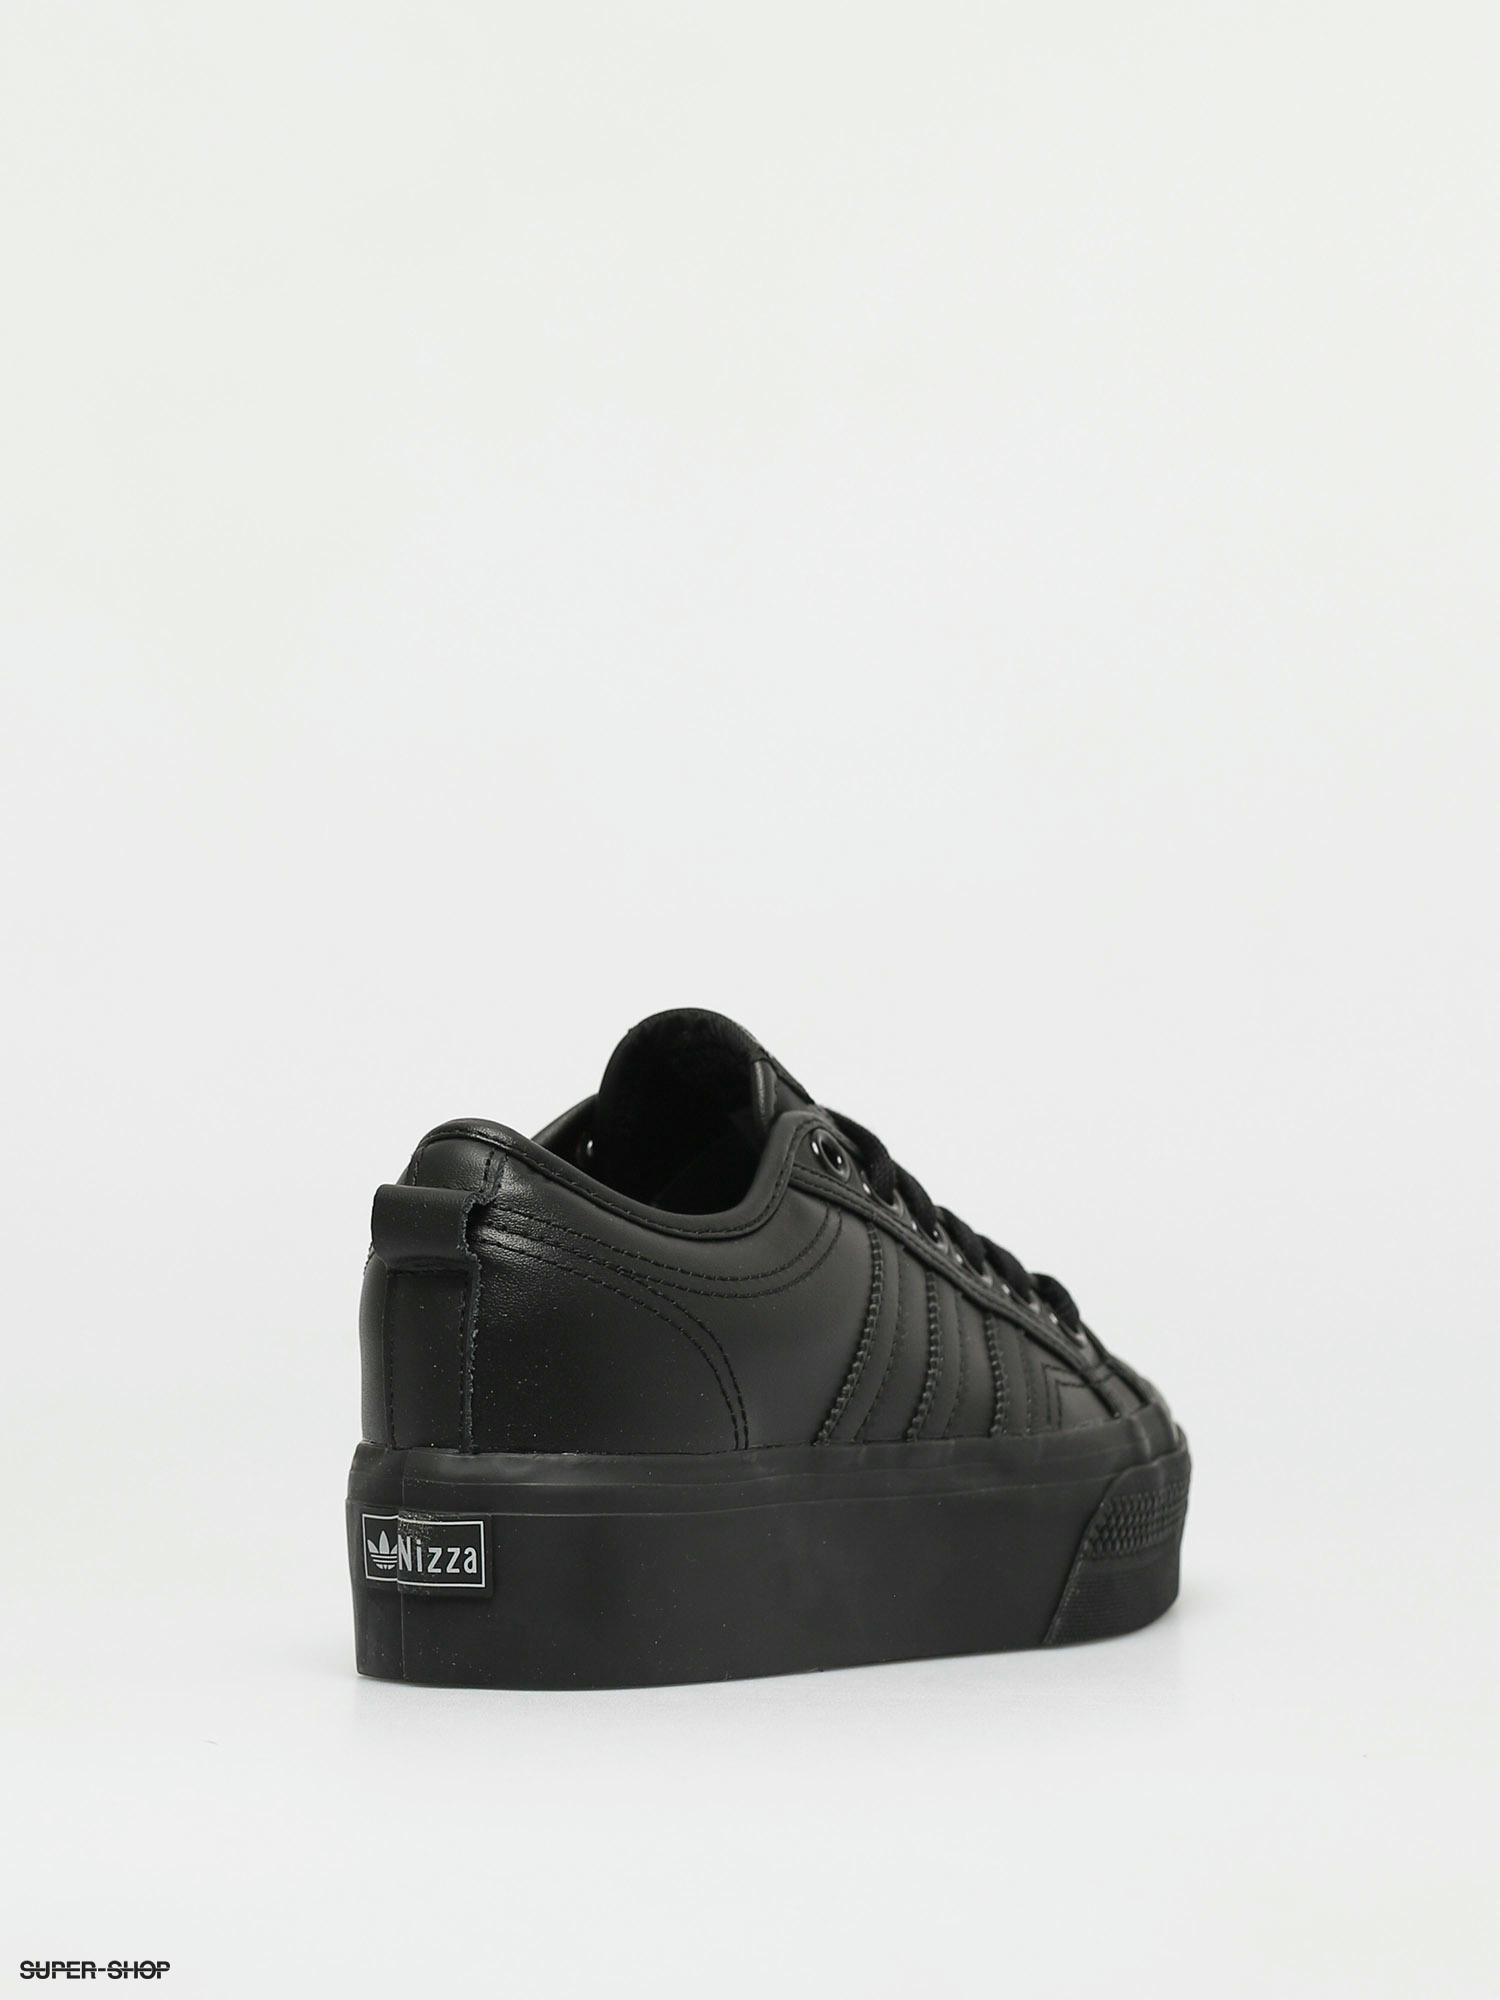 Adidas Originals Nizza Platform Shoes Wmn Cblack Cblack Cblack